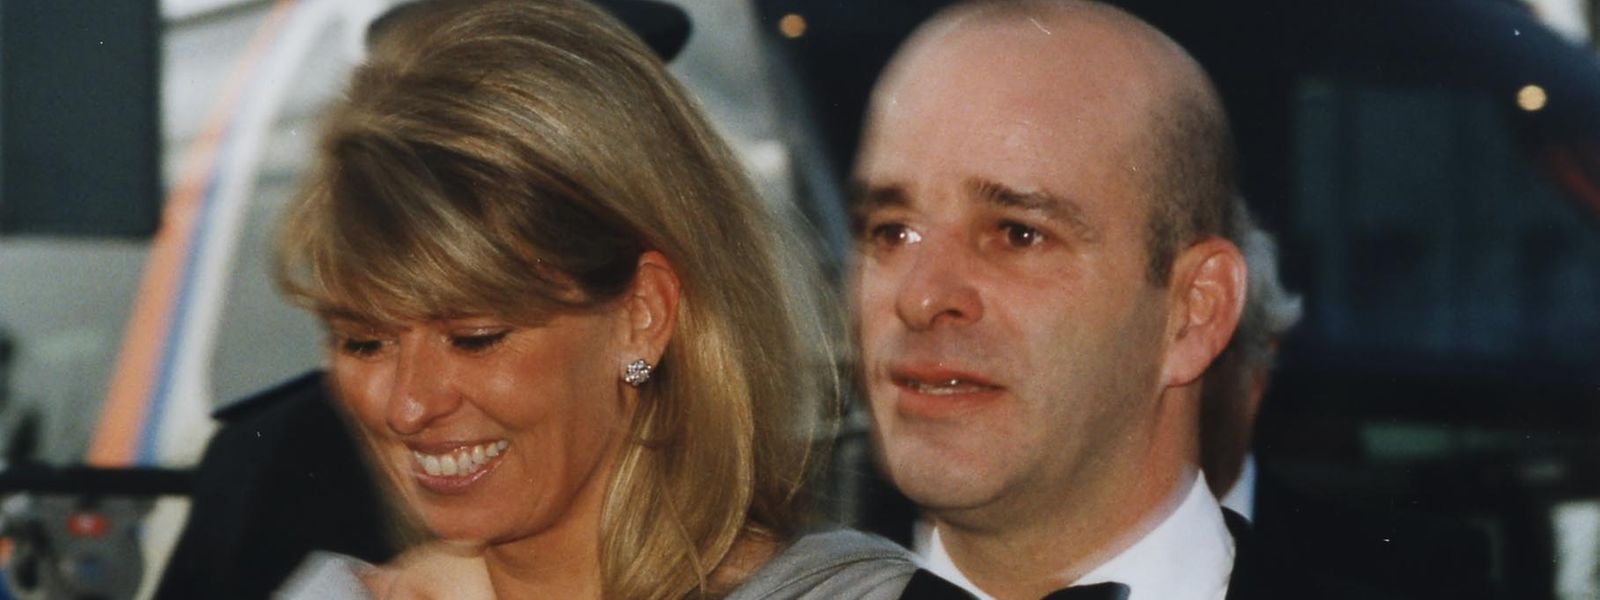 Luis Mestre, Bruder von Großherzogin Maria Teresa, mit seiner Frau bei einem Konzert im Jahr 2001.